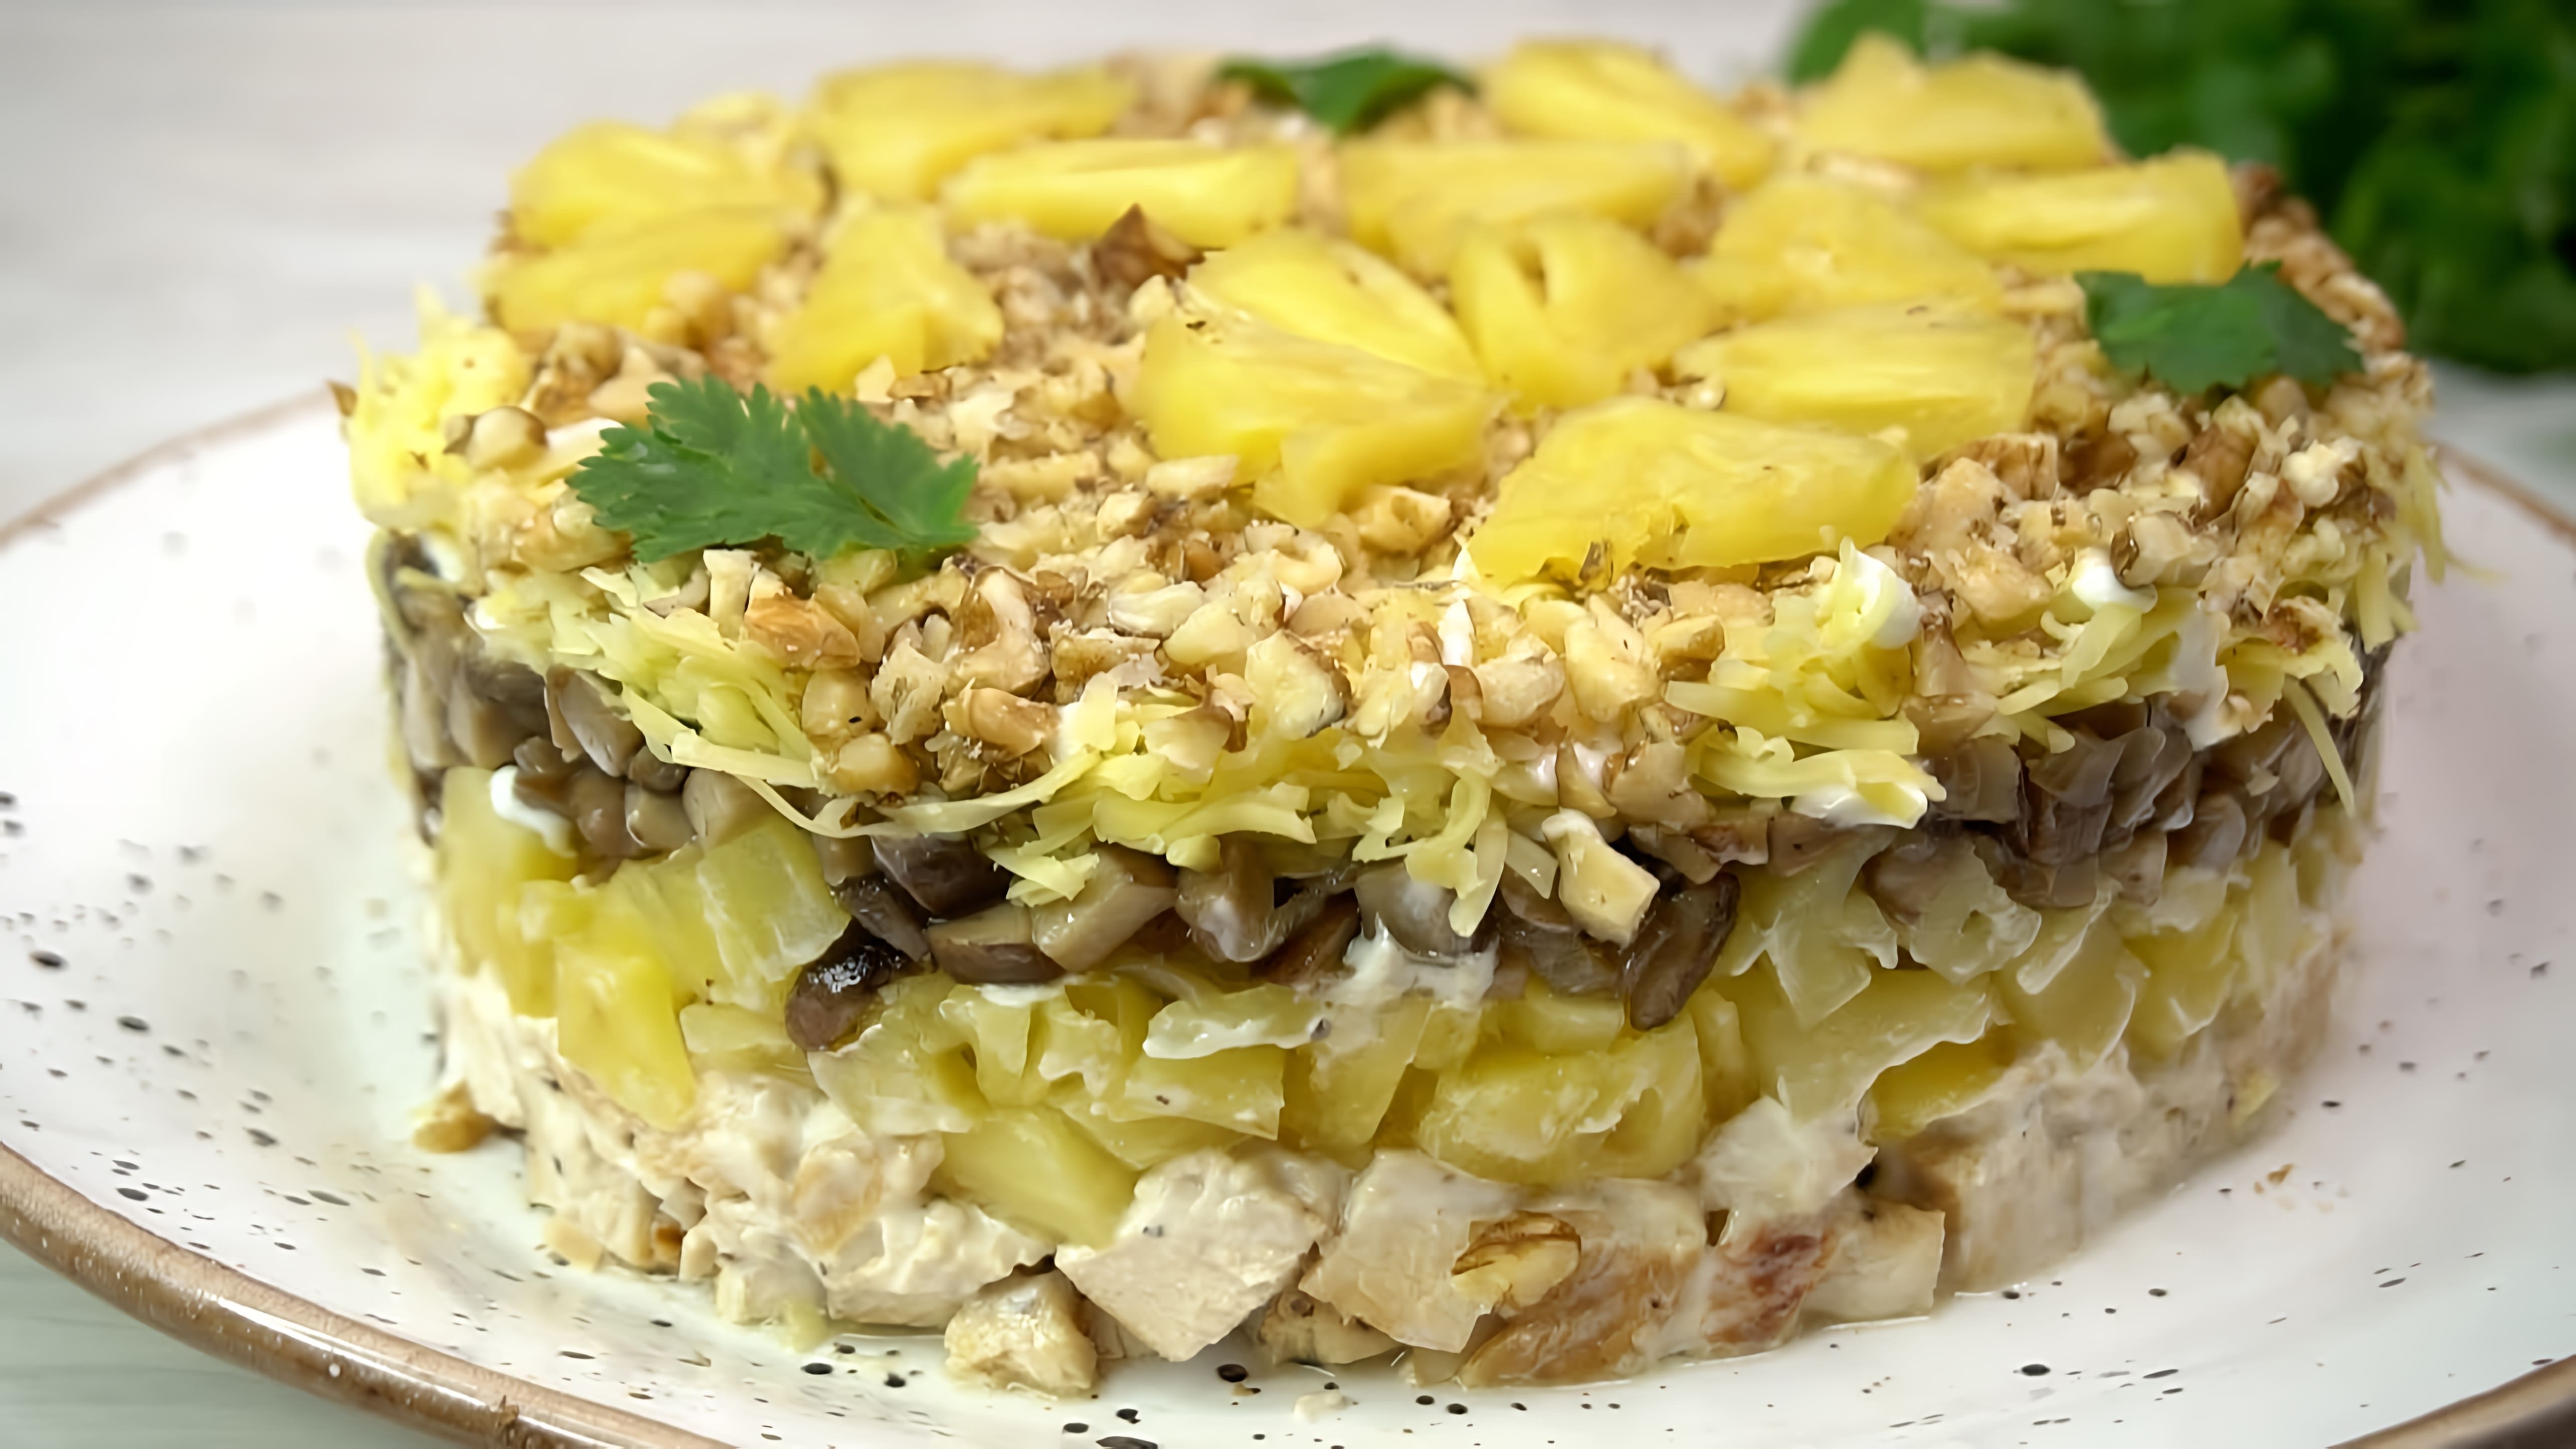 Видео представляет рецепт ананасового салата, который популярен на новогодних празднованиях в России